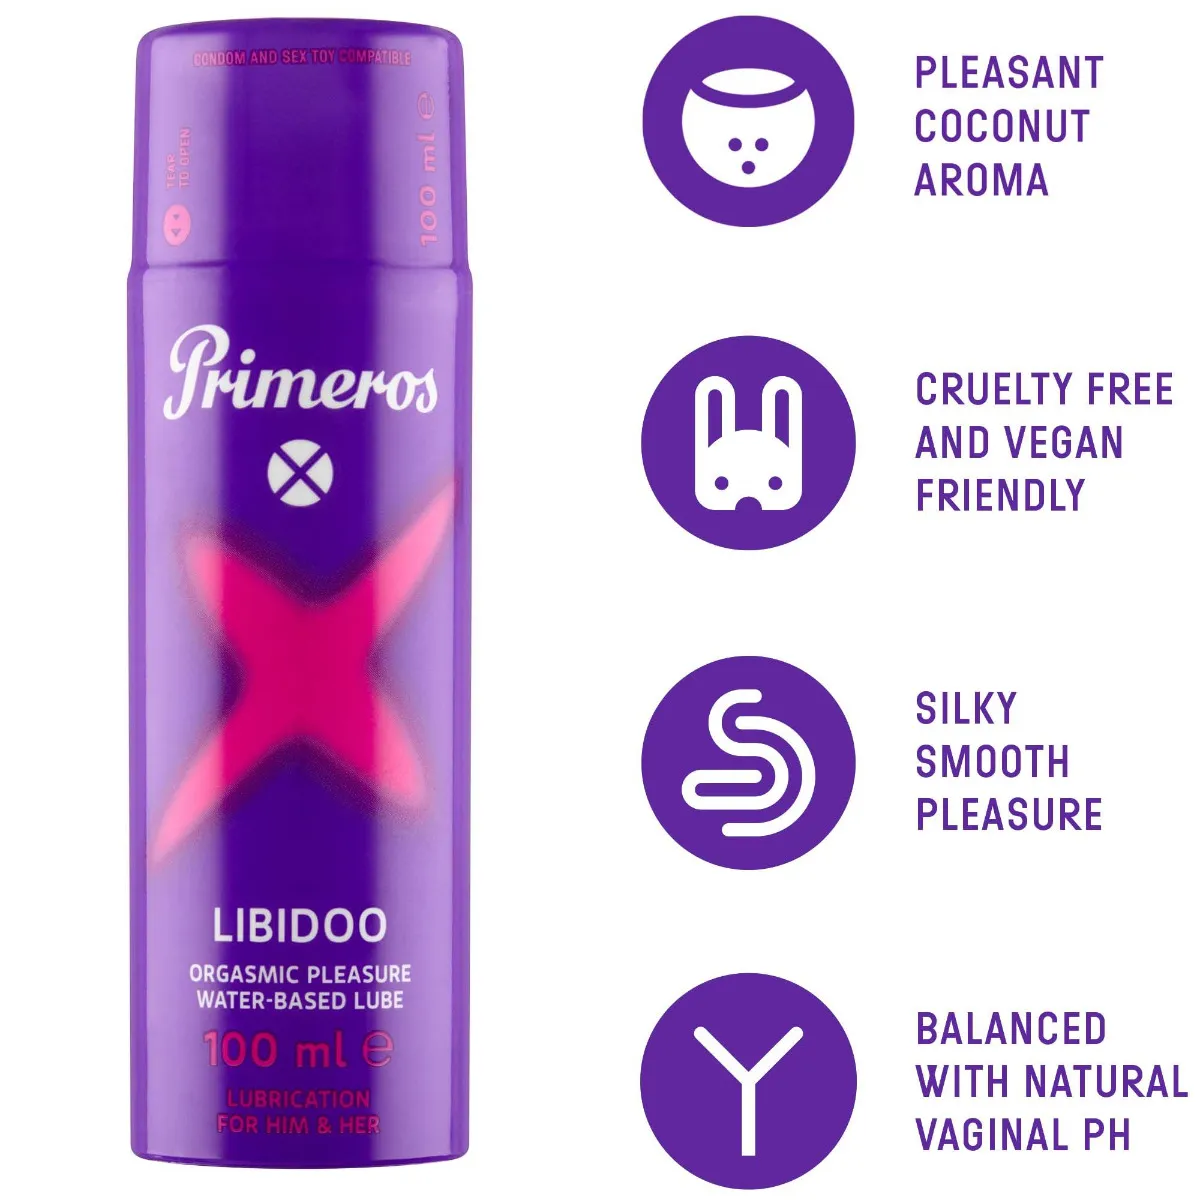 Primeros Libidoo Lubrikační gel pro zvýšení sexuální citlivosti 100 ml